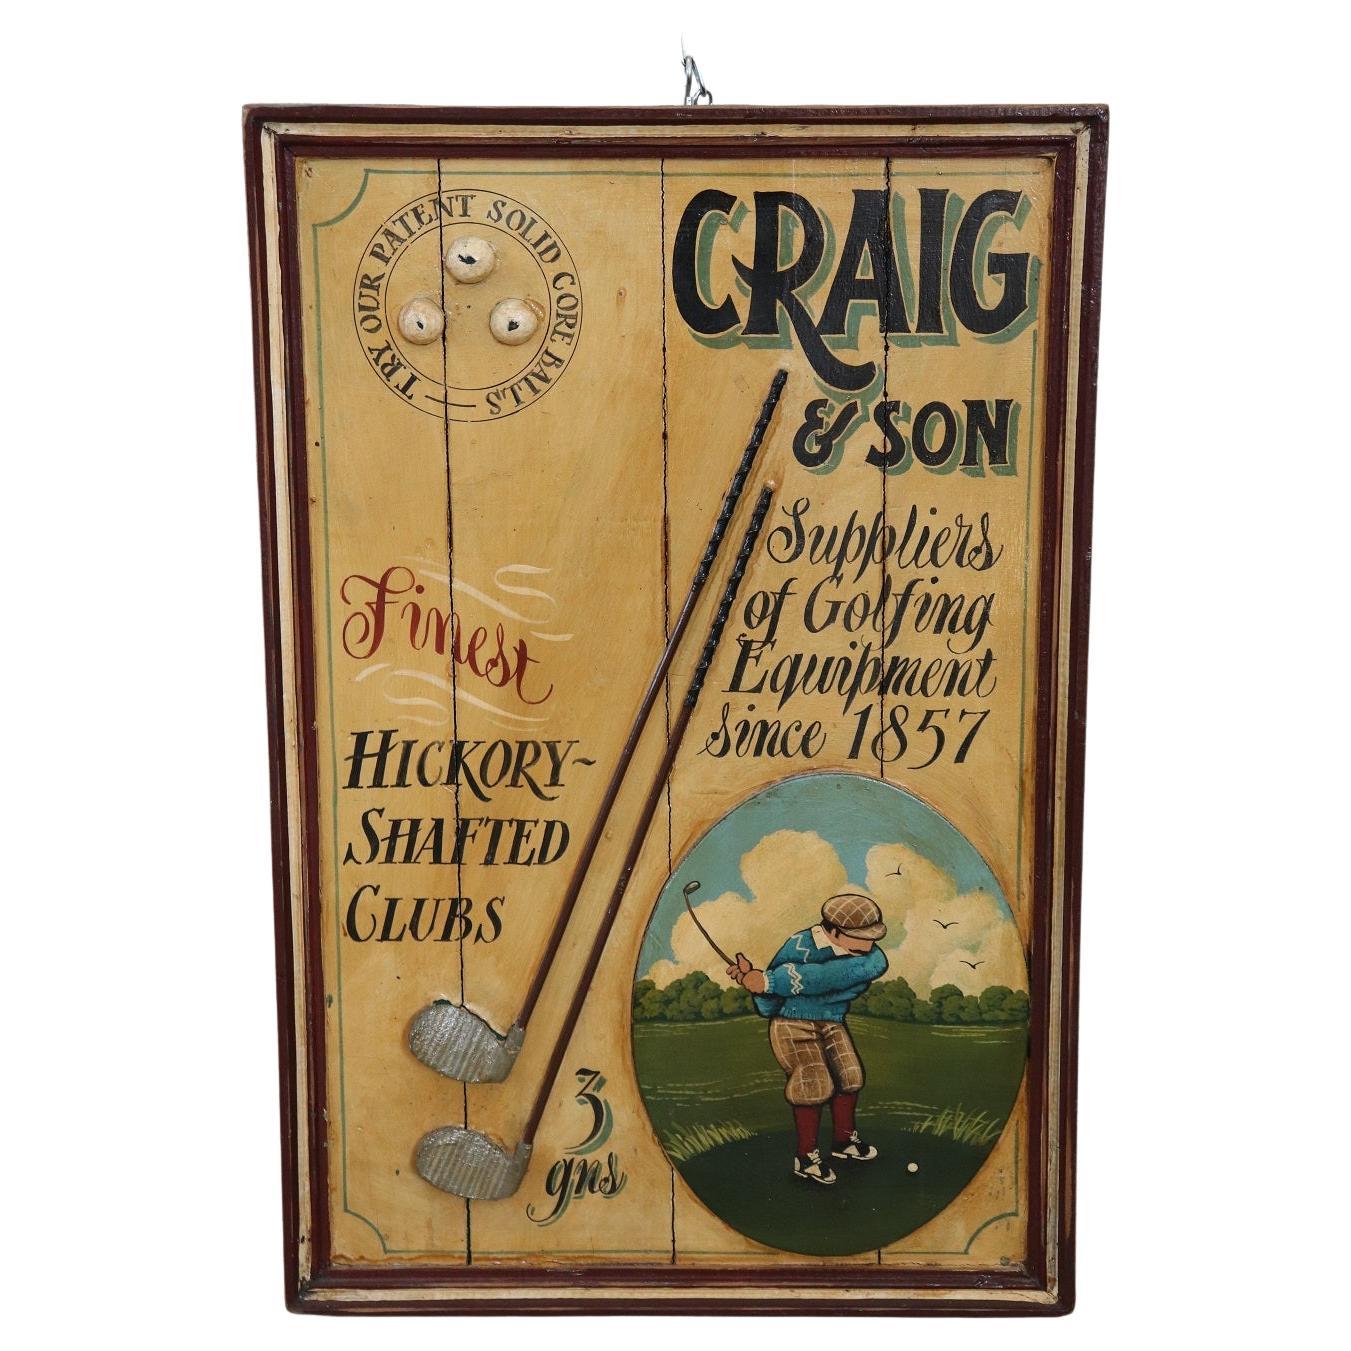 Panneau publicitaire vintage peint à la main sur bois pour les équipements de golf, années 1920